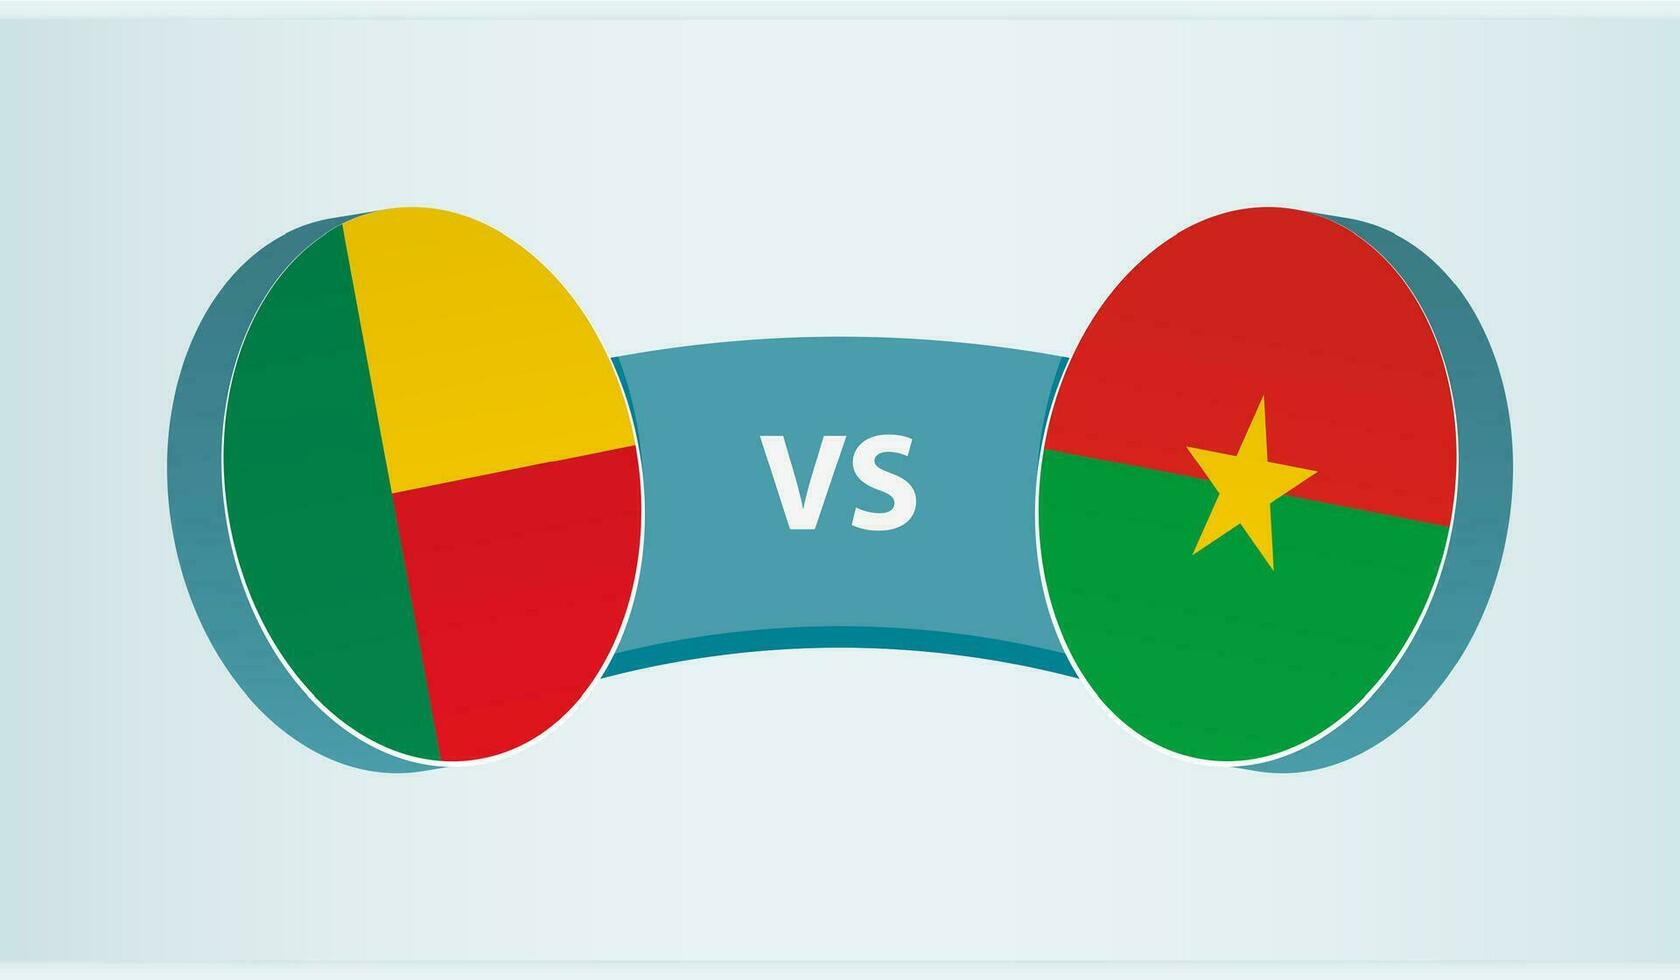 benin versus burkina Faso, equipo Deportes competencia concepto. vector